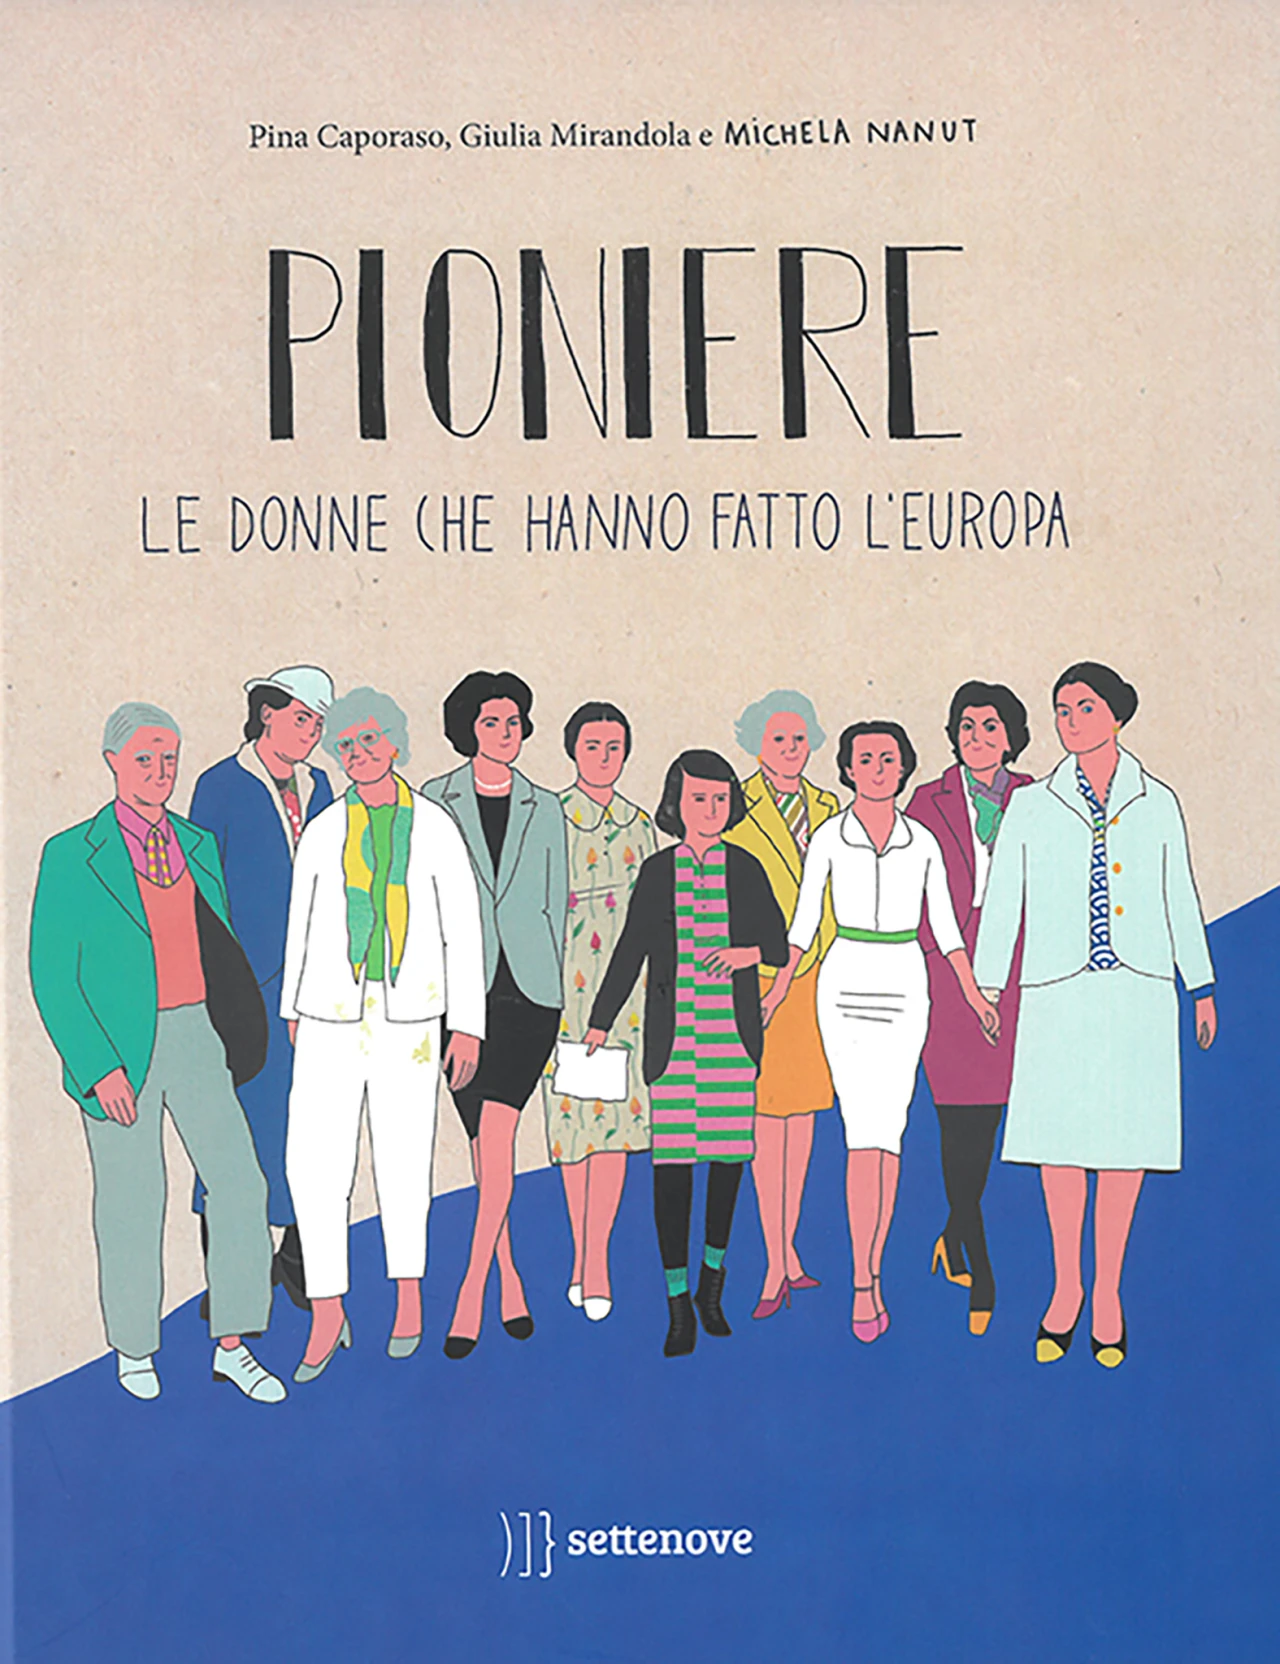 016-donne-Pioniere.jpg